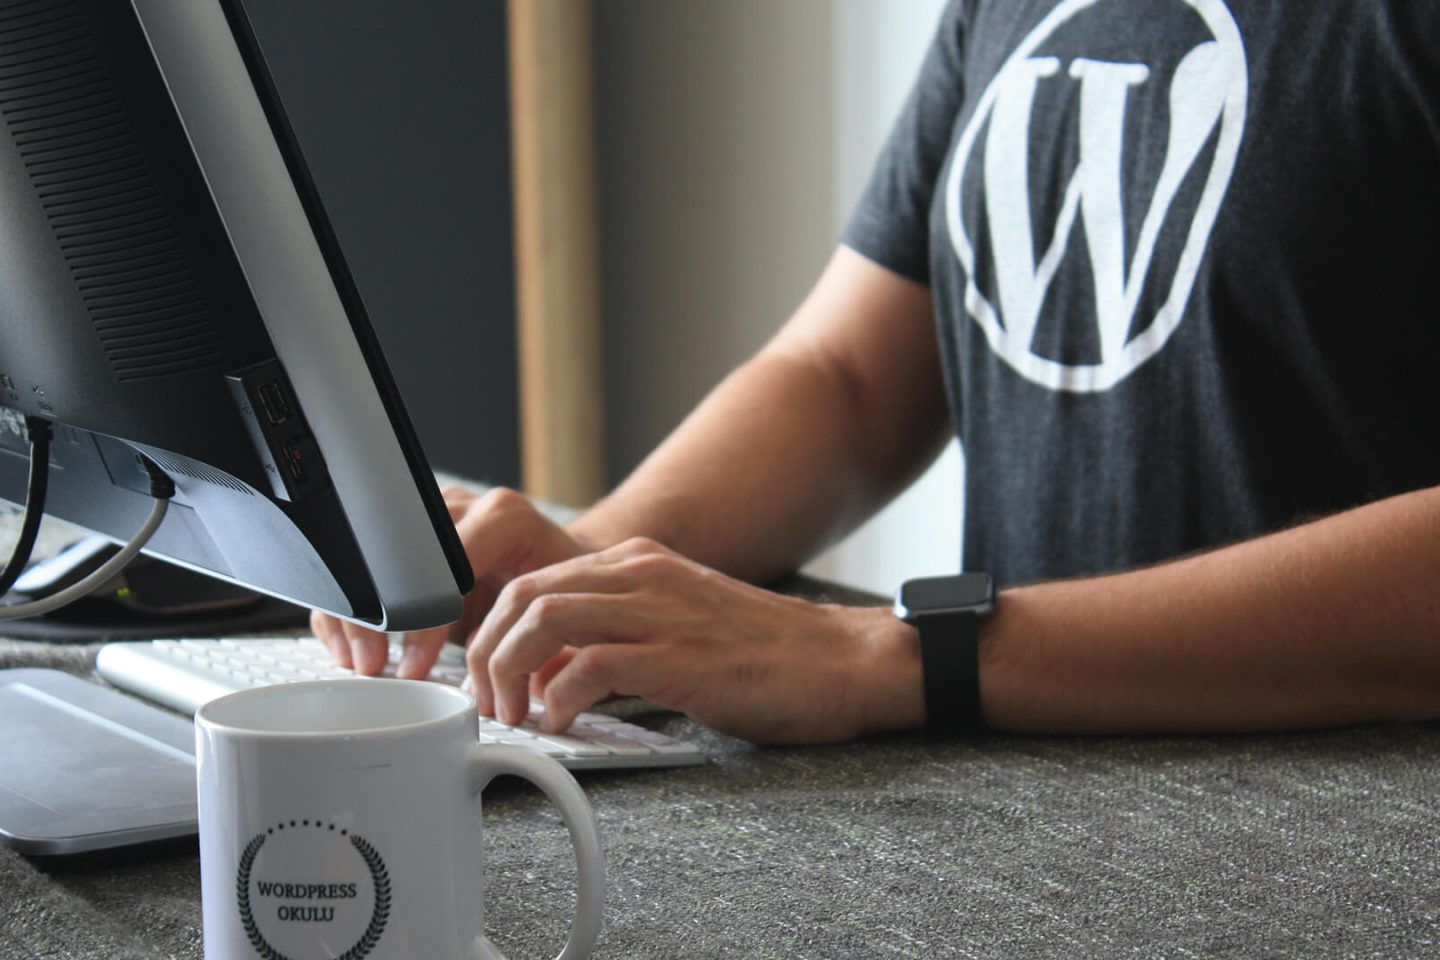 Warum ist WordPress so beliebt - 7 Gründe